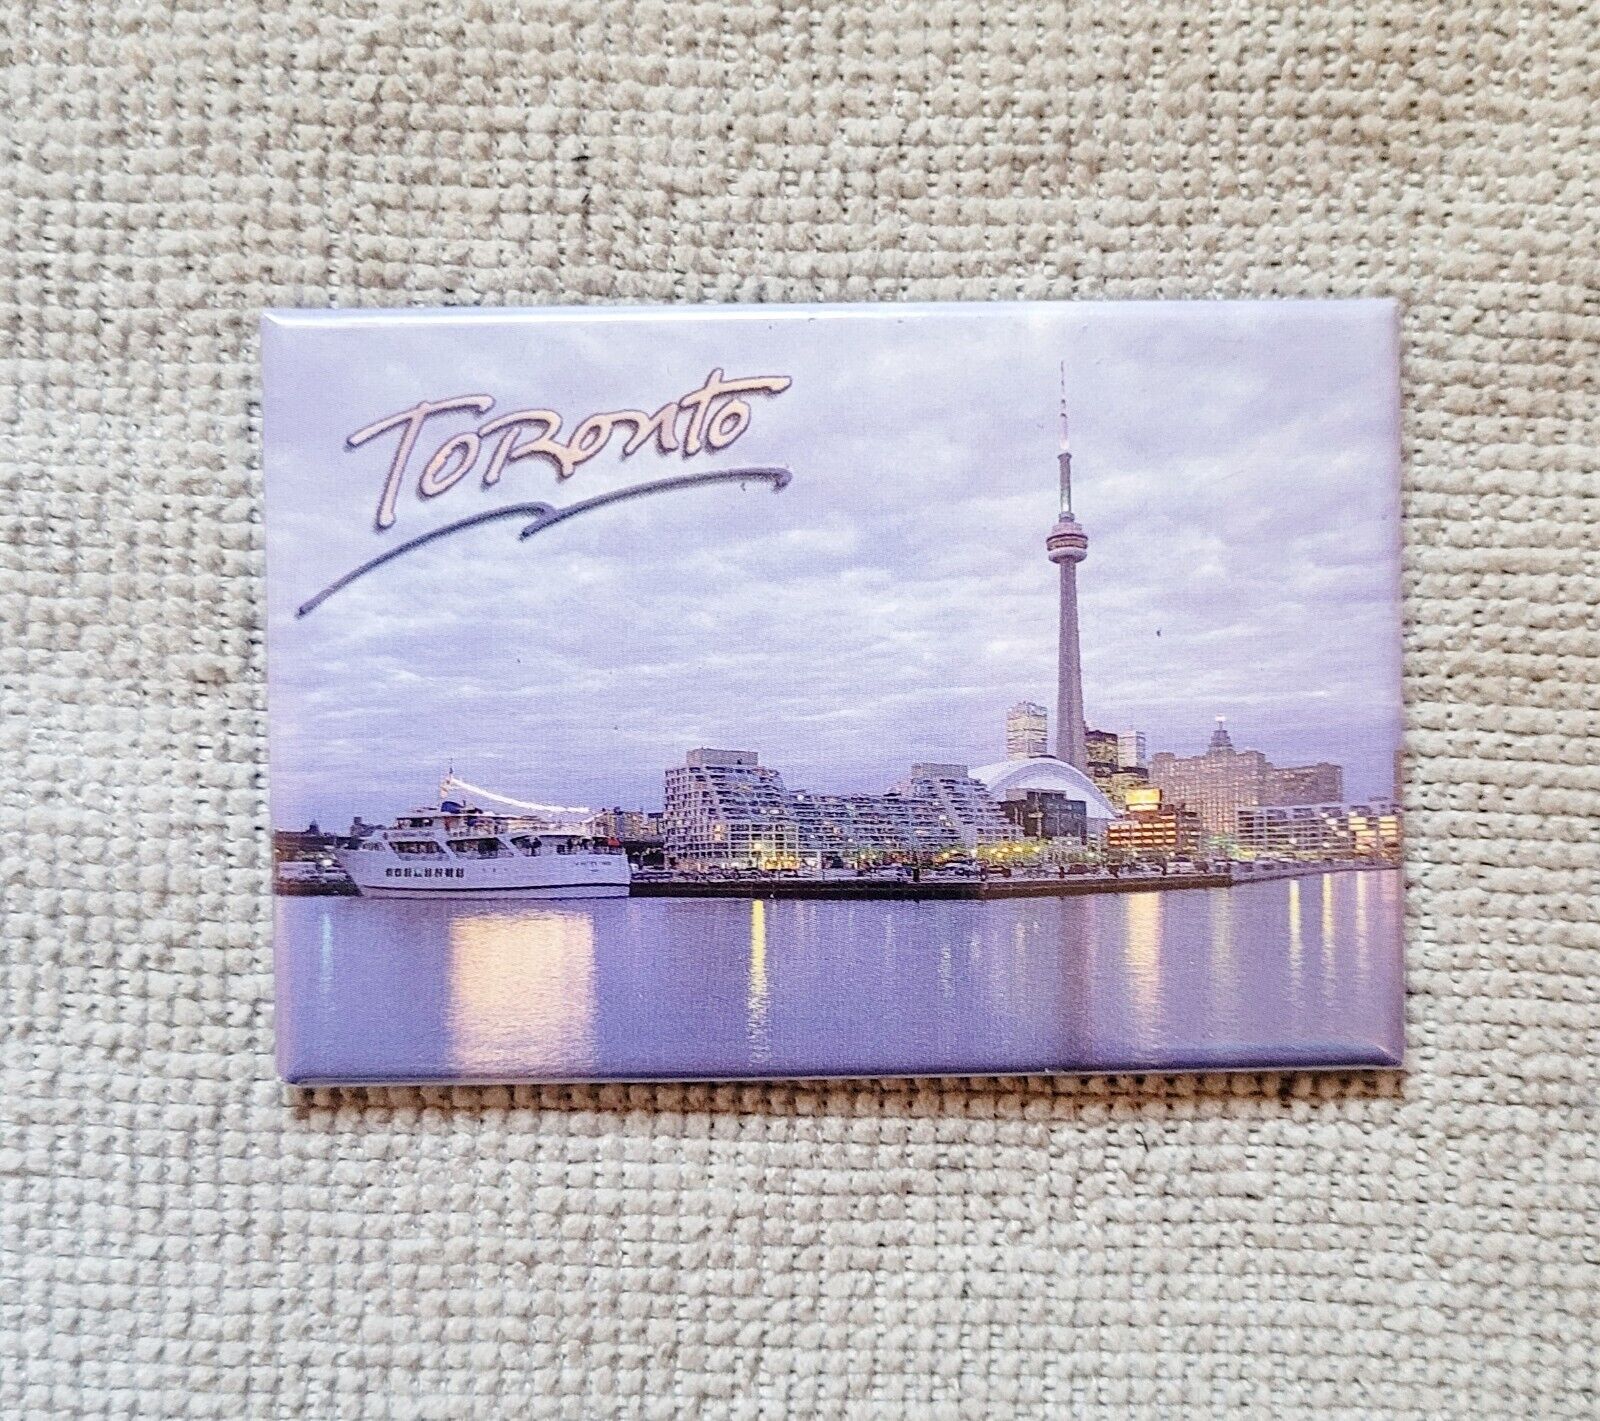 Toronto Canada Refrigerator Magnet Travel Souvenir Photo Metal 